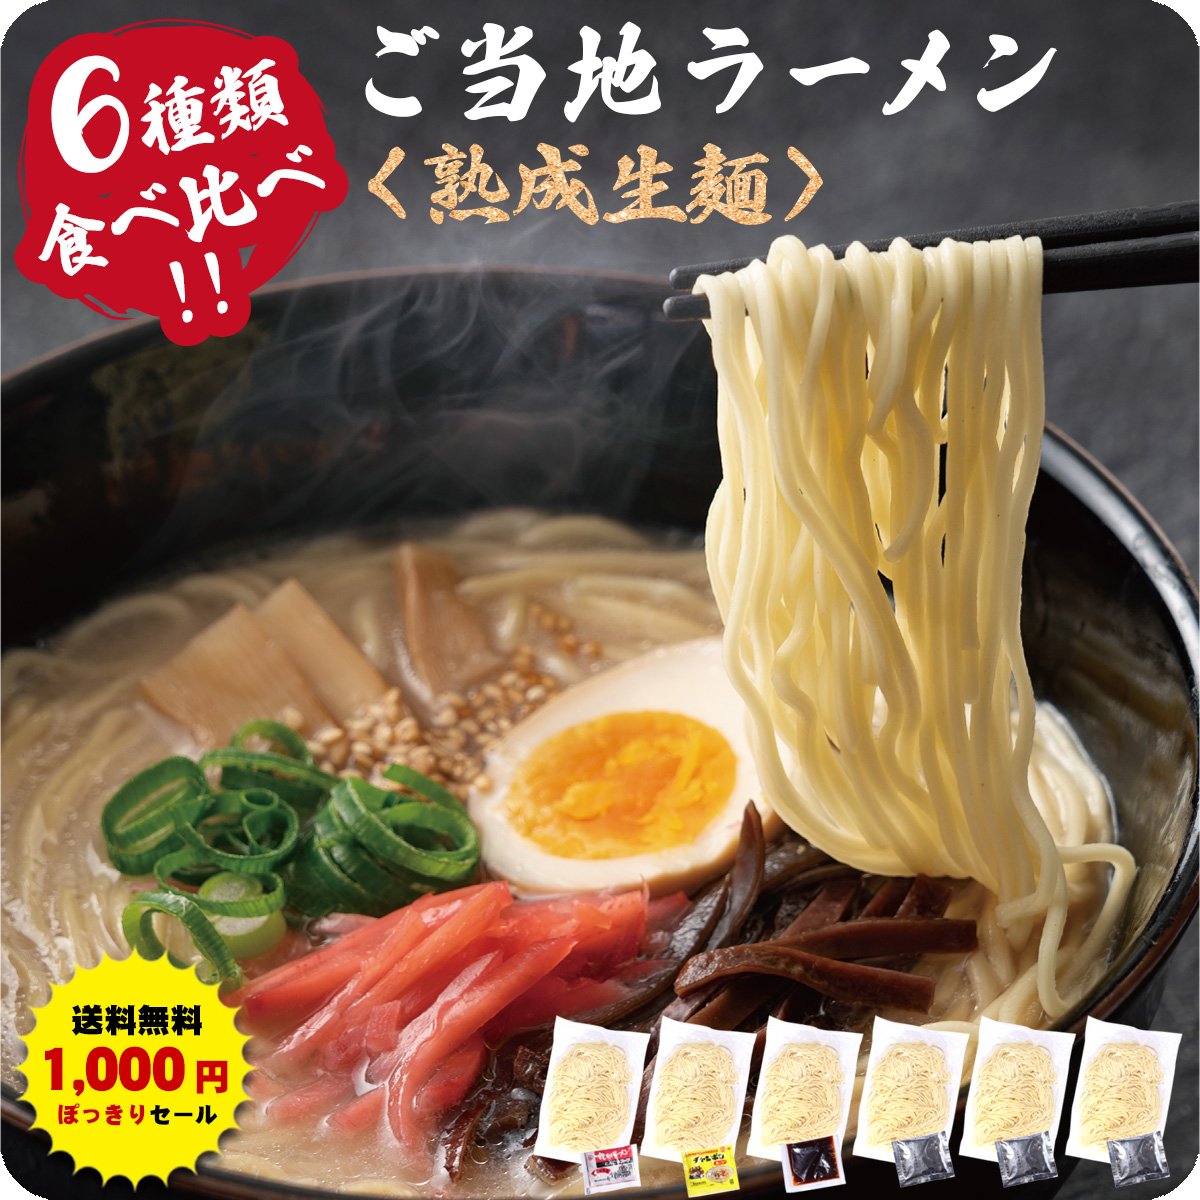 九州＆北海道の人気 ご当地 ラーメン 国産小麦を使用したモチモチ熟成生麺6食入り※【A】〜【H】からご選択ください。